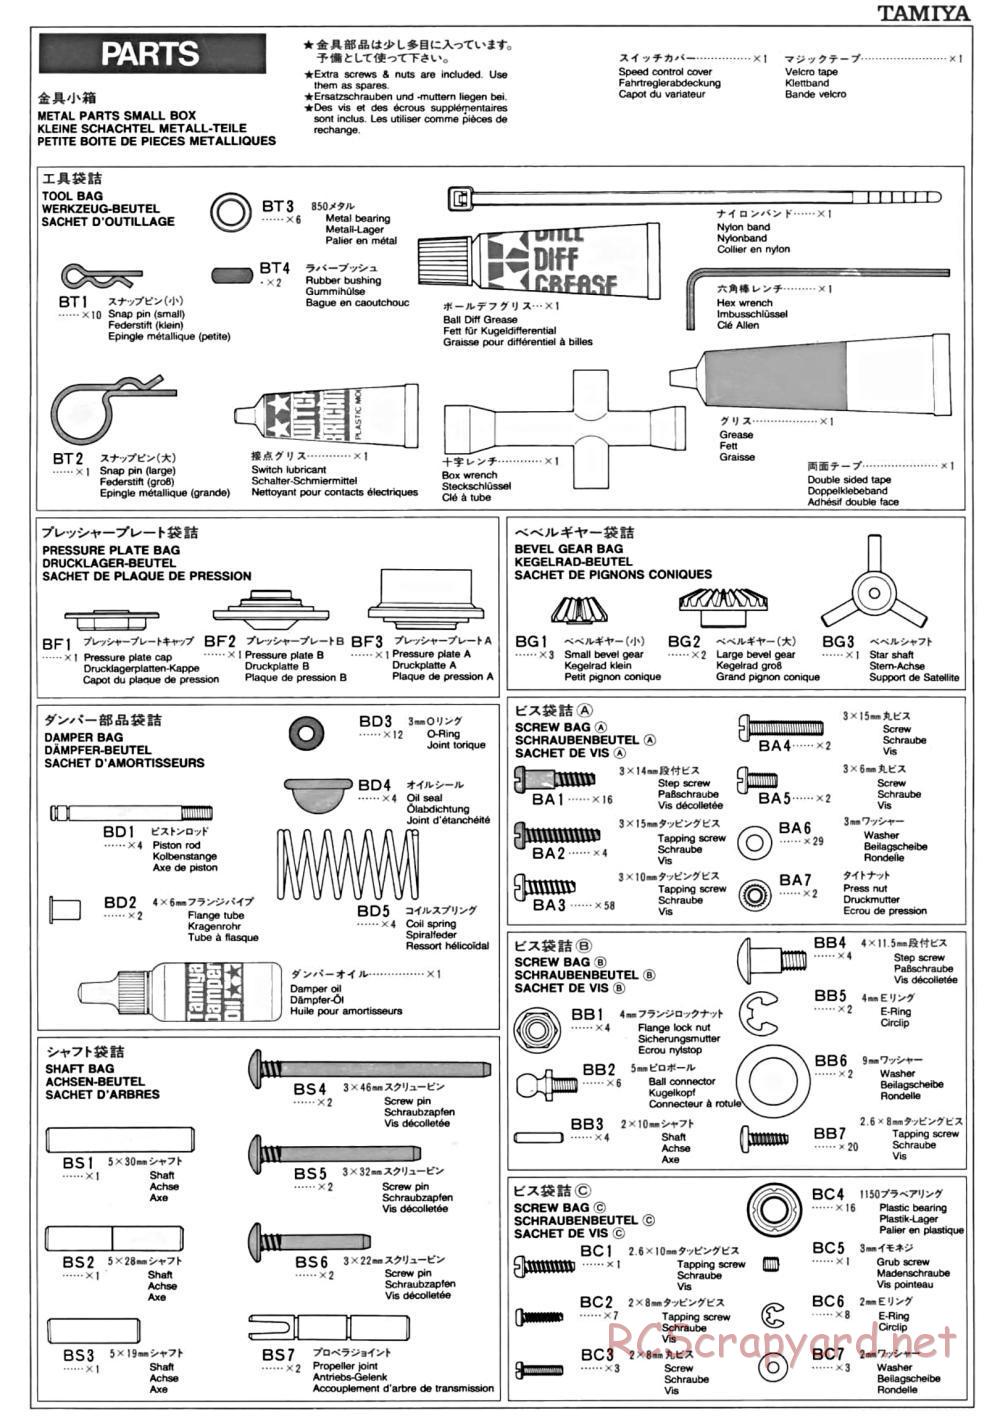 Tamiya - TA-01 Chassis - Manual - Page 17